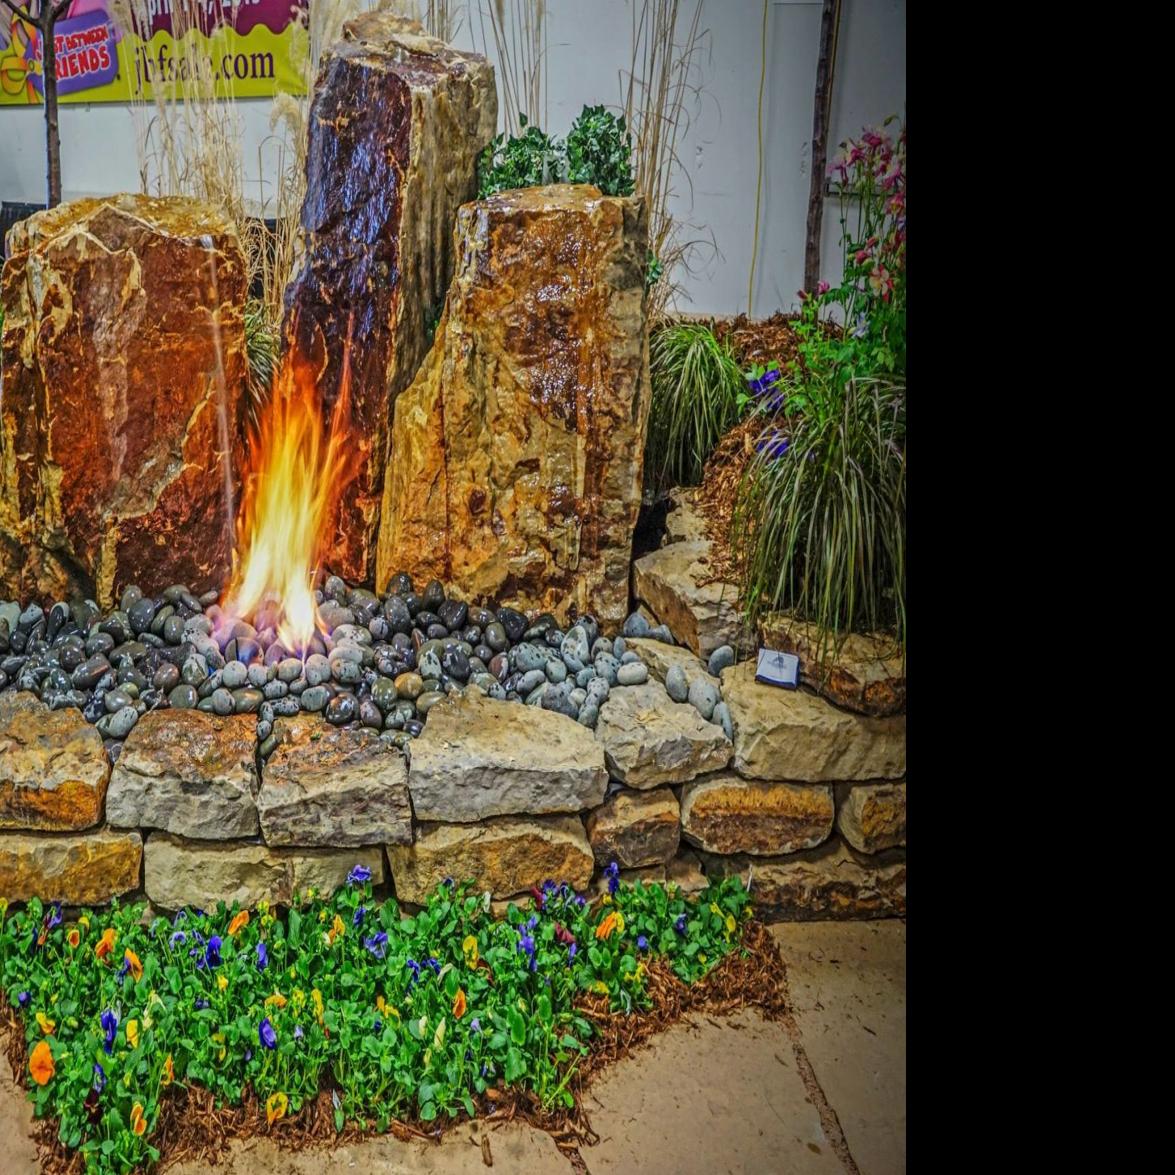 Colorado Springs Hba Home Garden Show Gives Hint Of Spring This